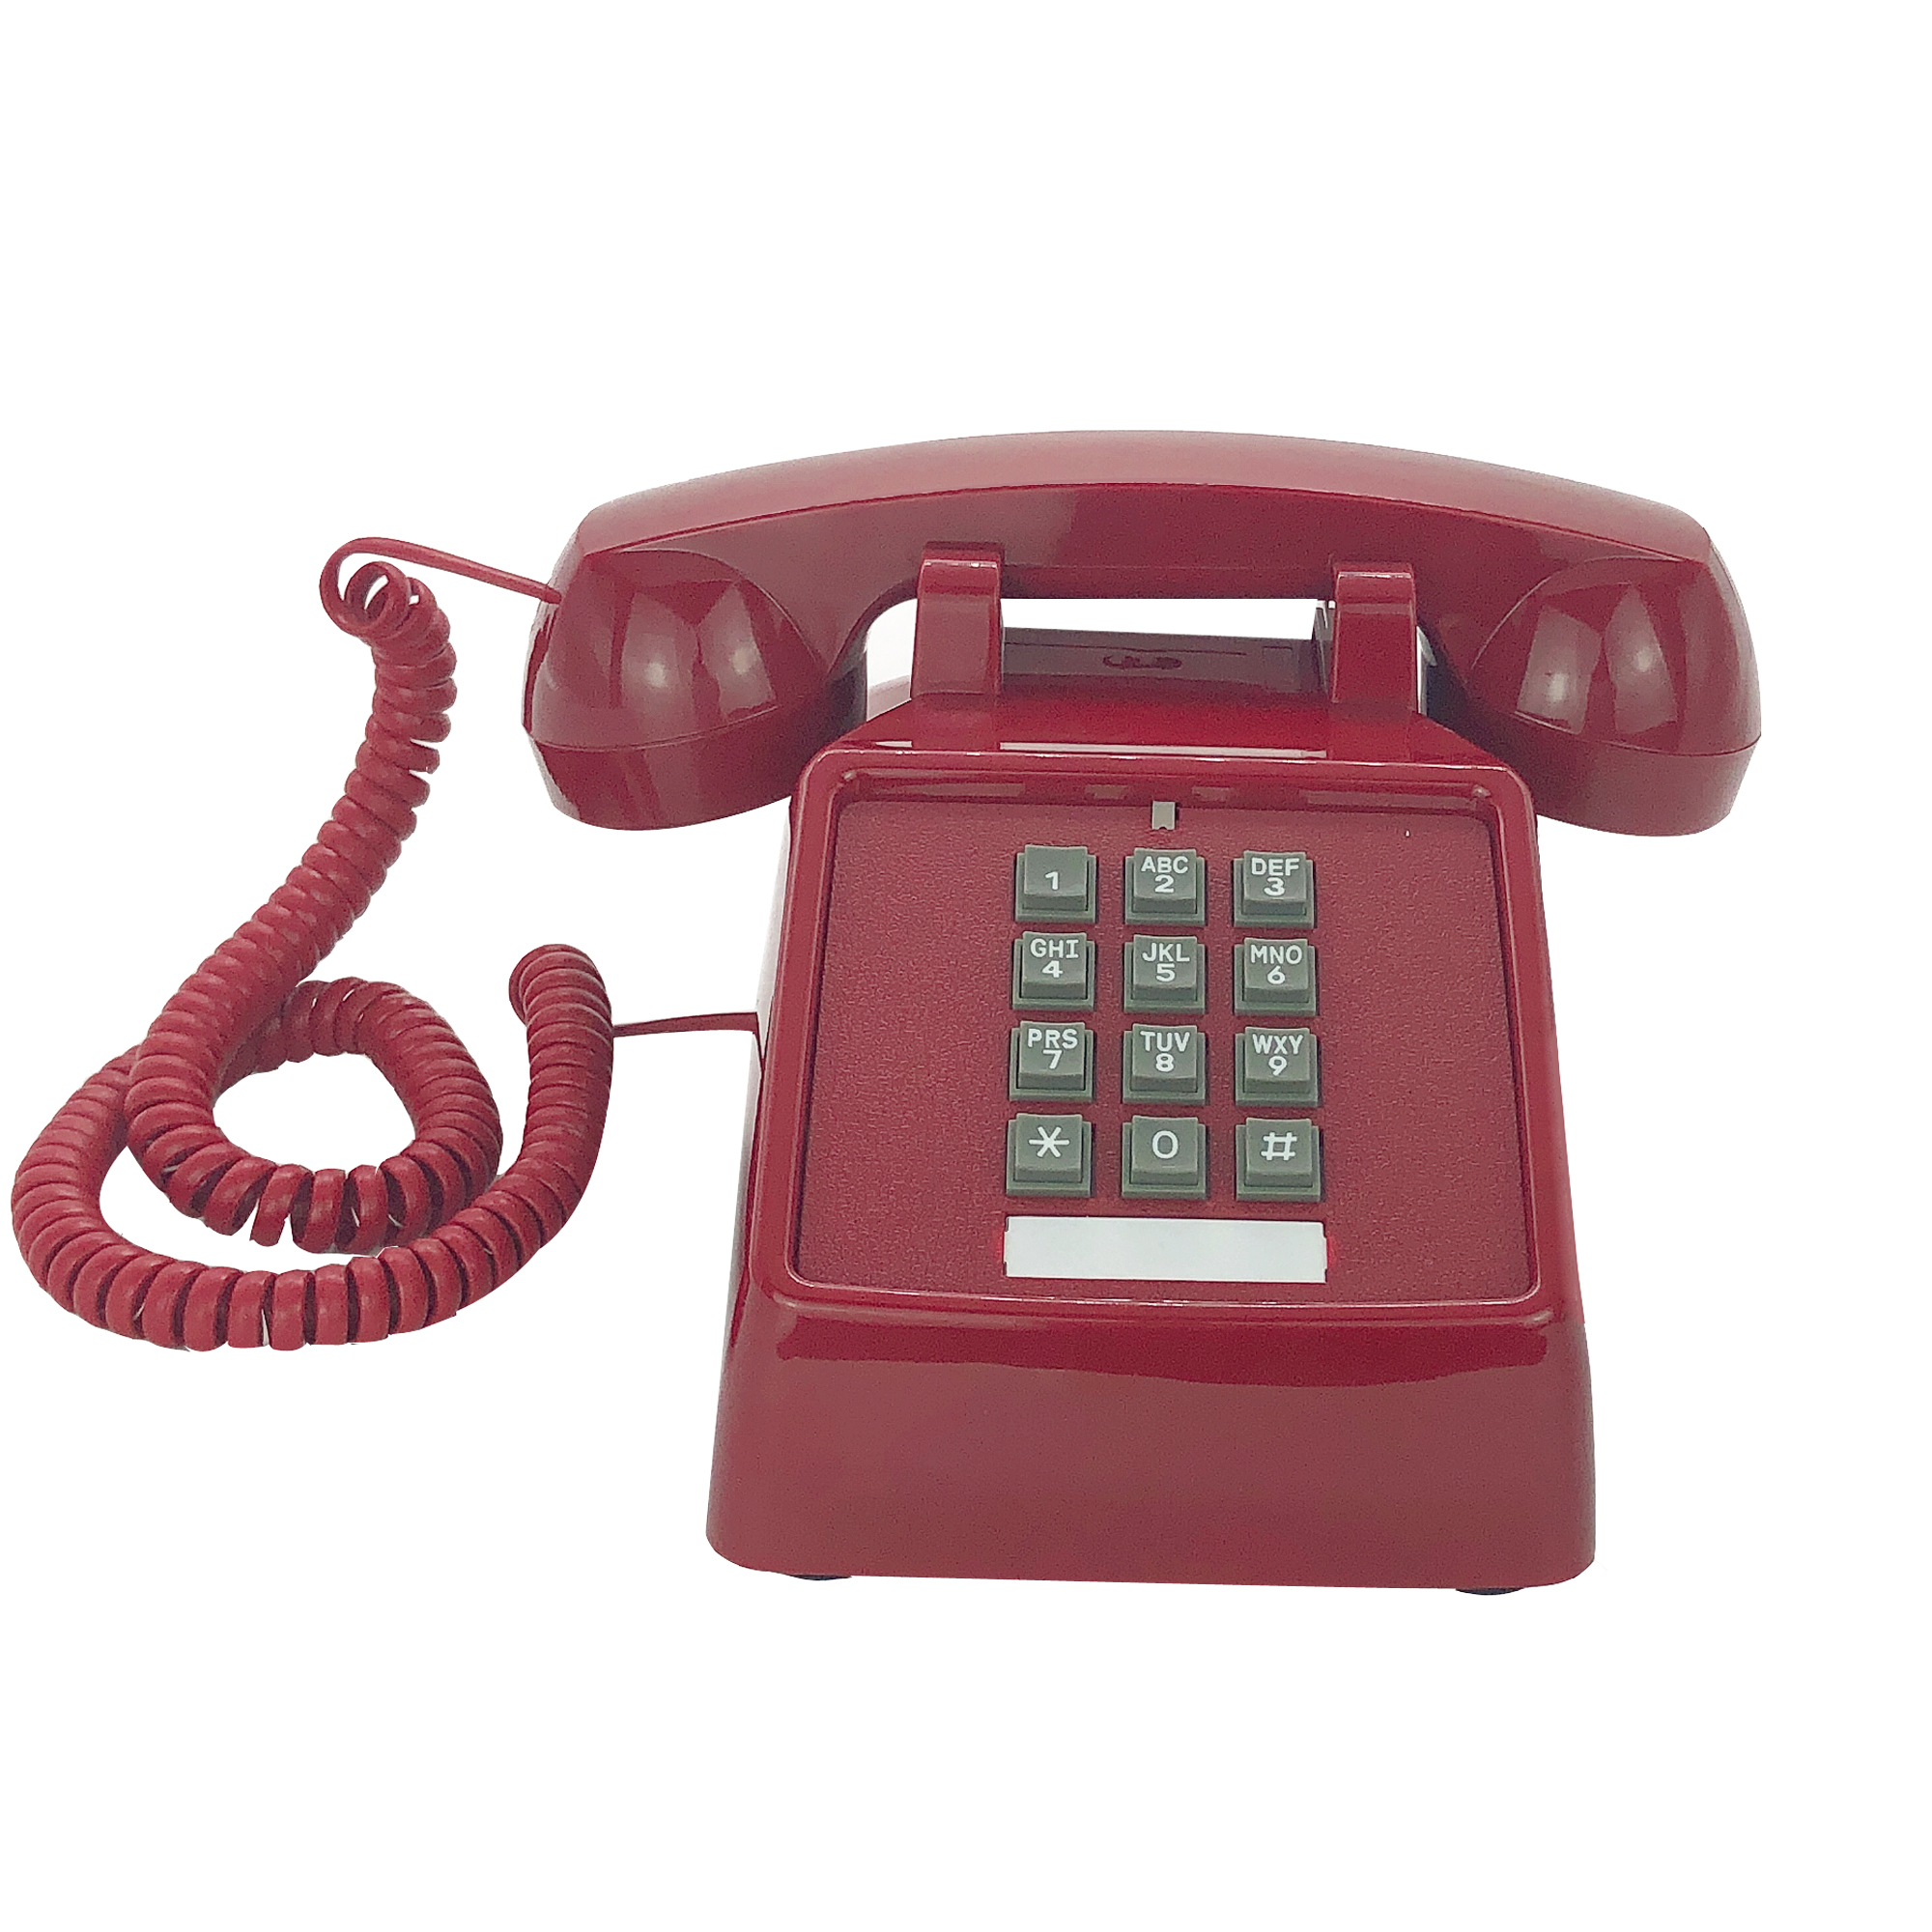 Téléphone filaire rétro classique rouge analogique, Vintage, ancien, à la , fixe, pour maison, bureau, hôtel